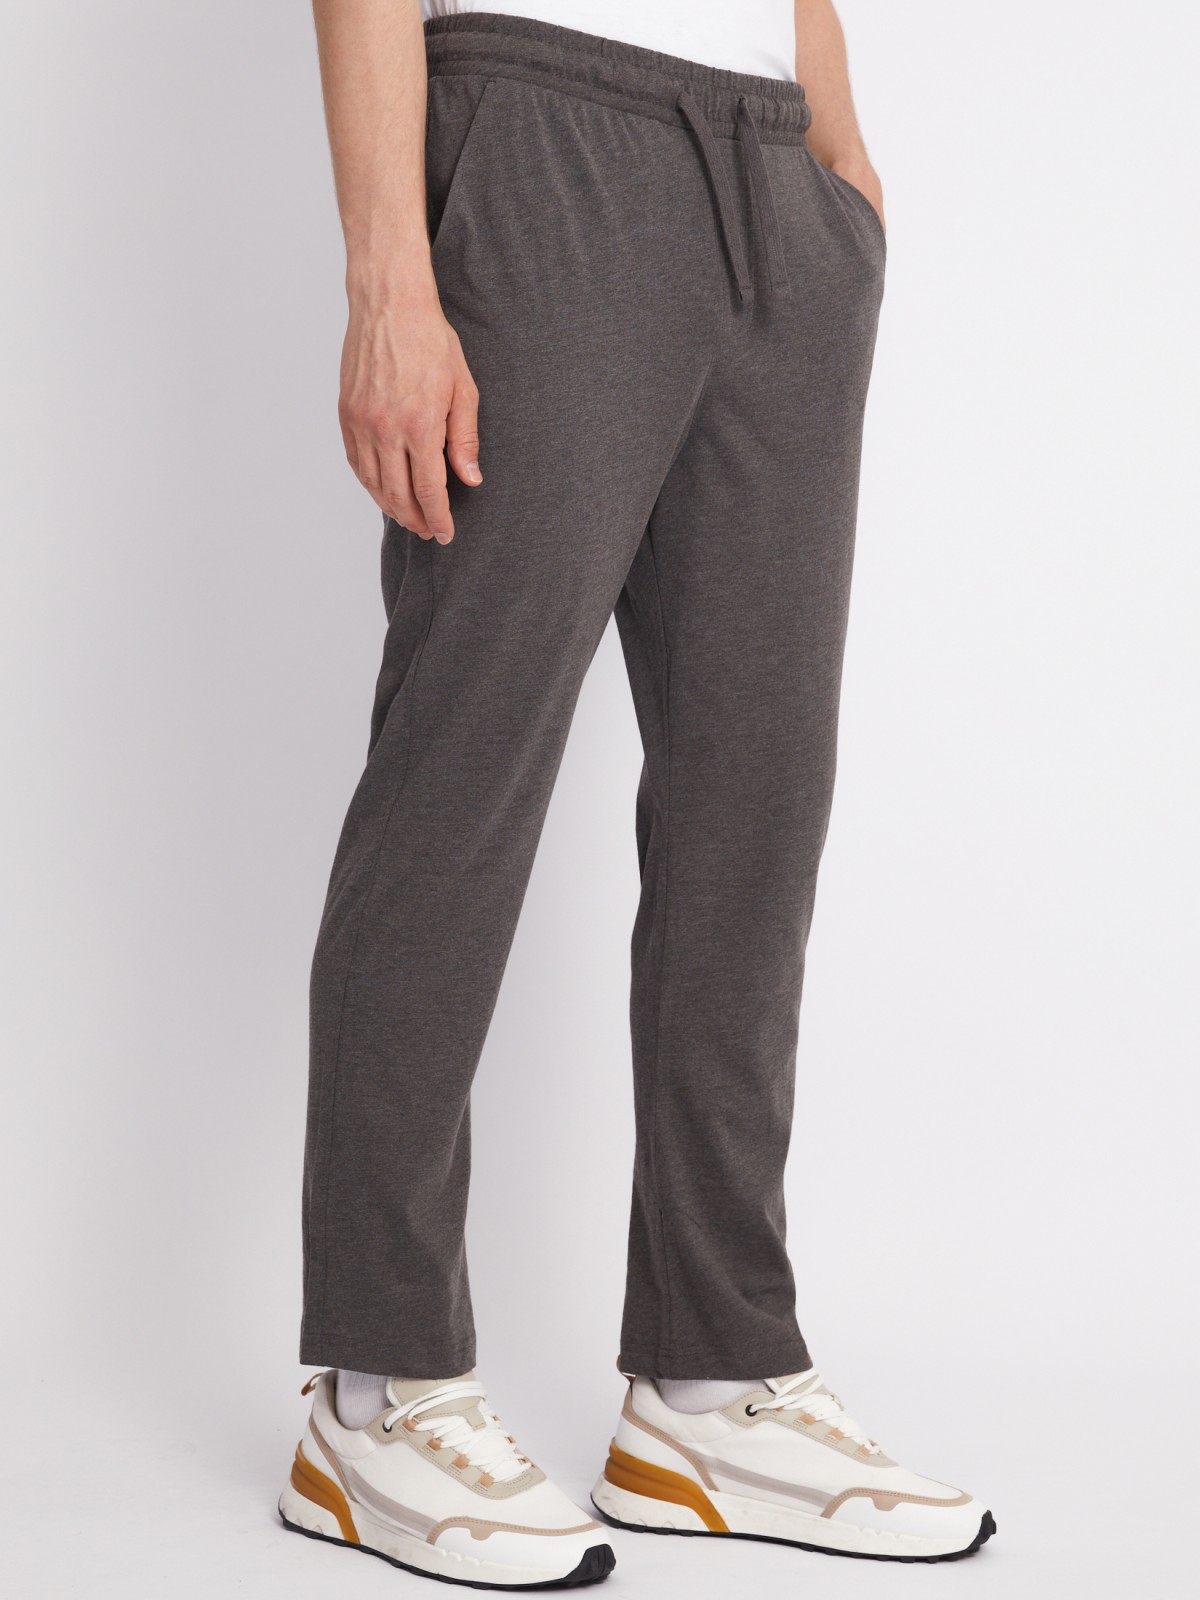 Трикотажные брюки в спортивном стиле zolla 01331765Q022, цвет темно-серый, размер S - фото 2